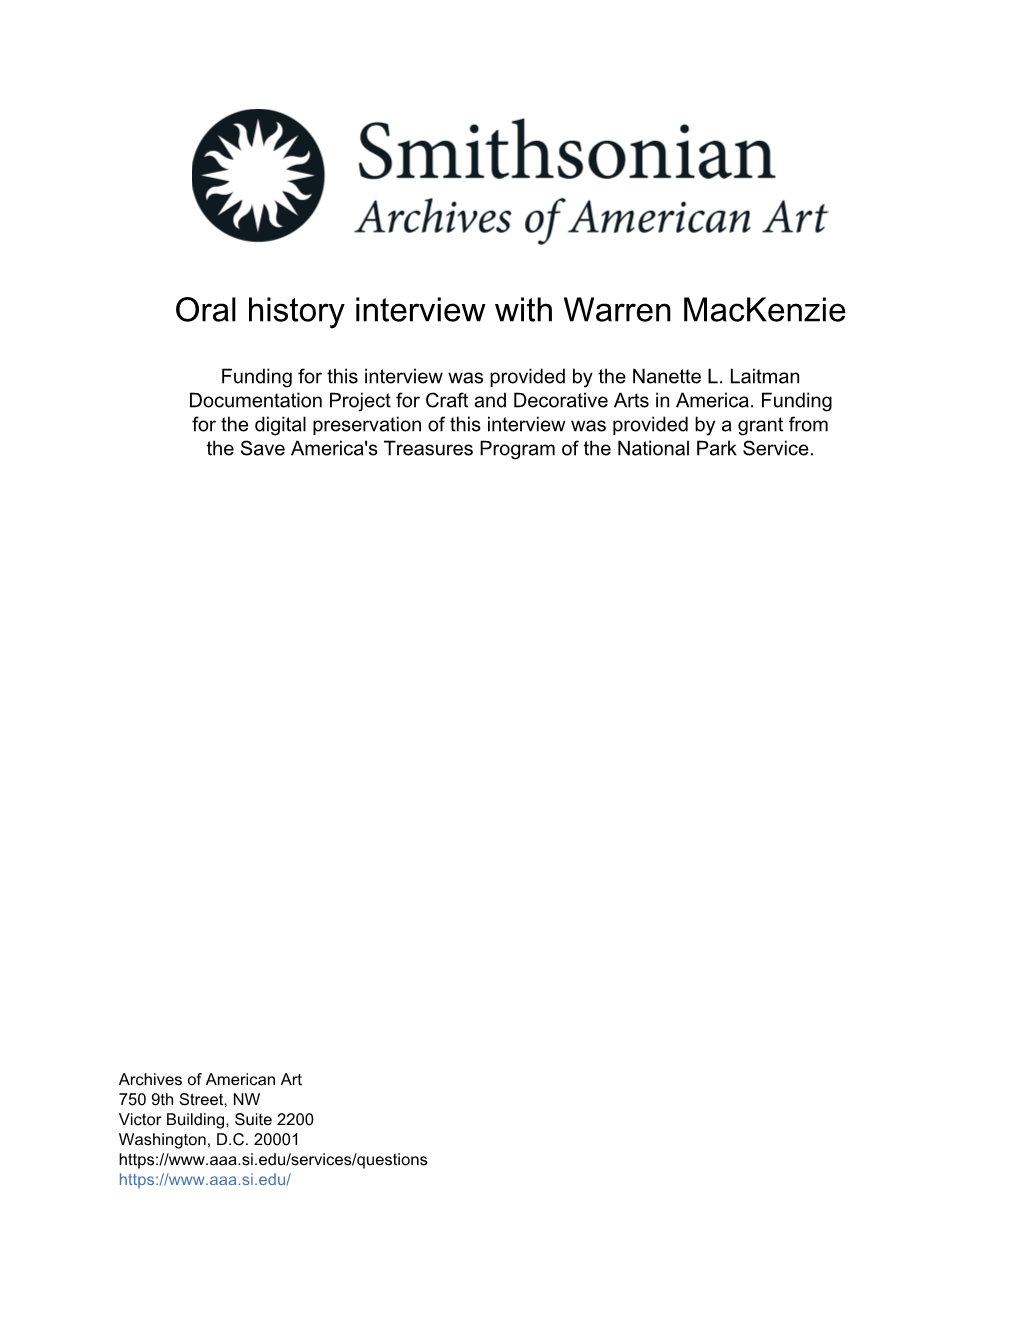 Oral History Interview with Warren Mackenzie